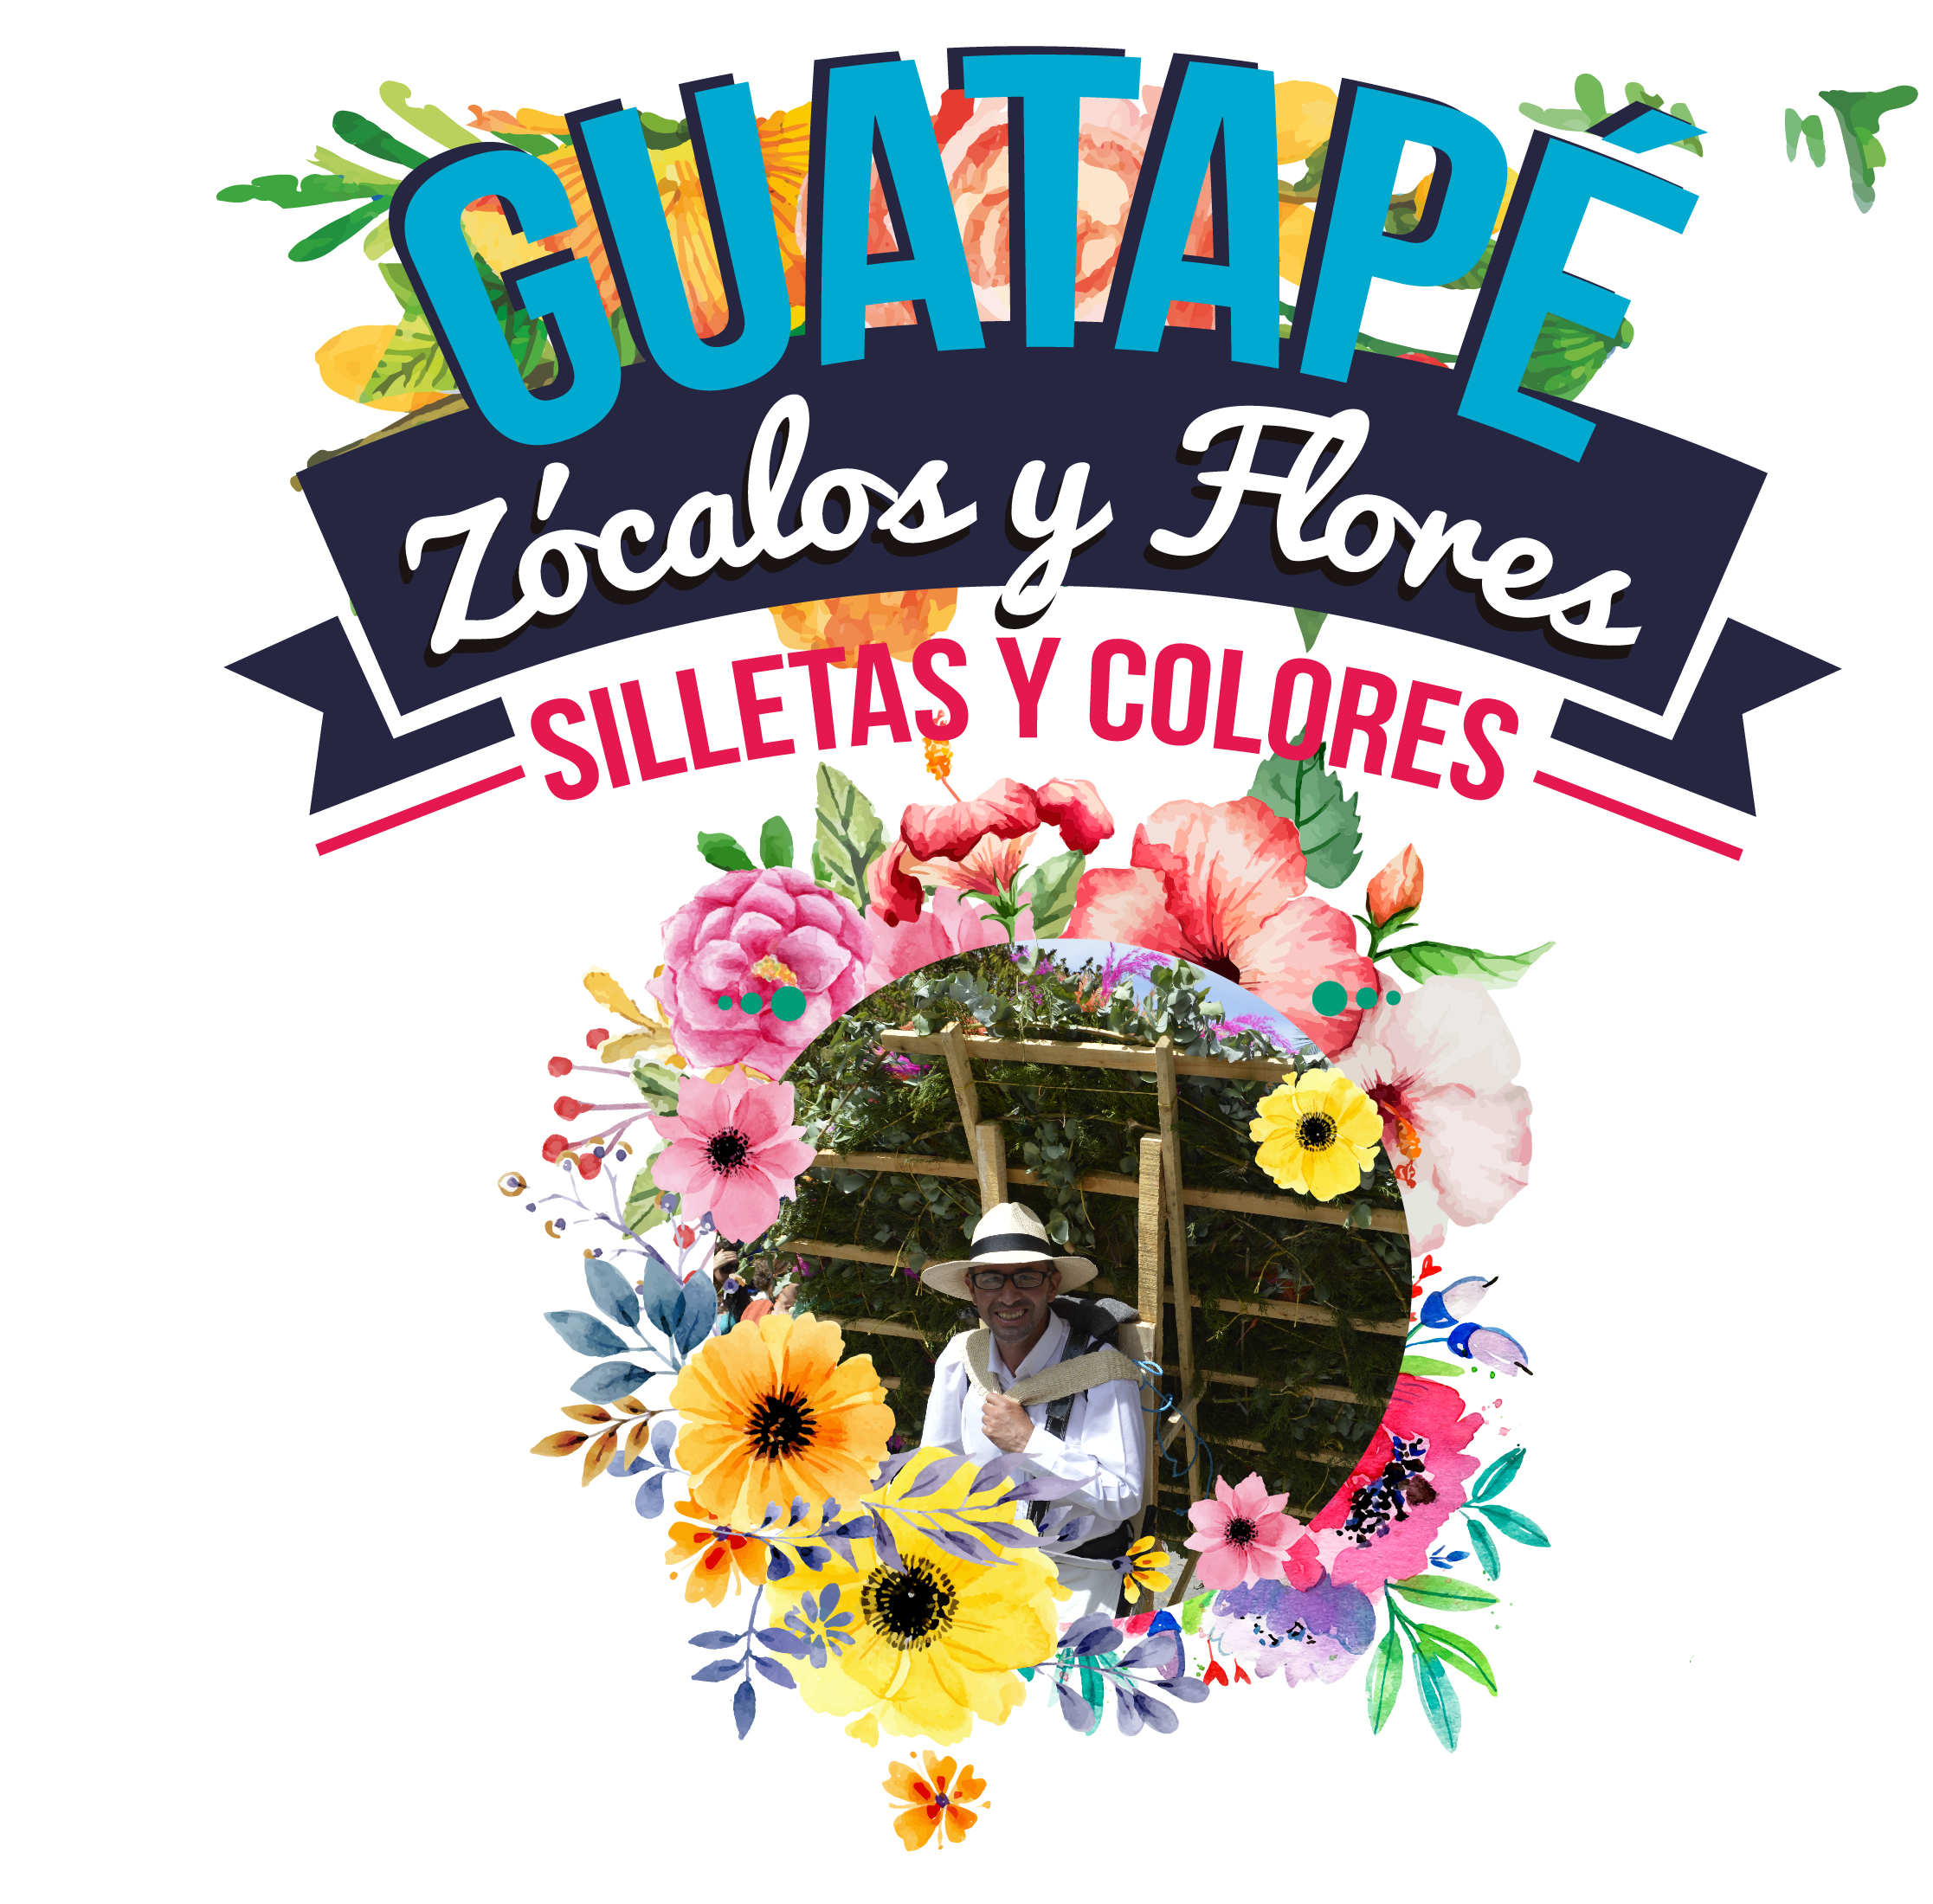 Este fin de semana en Guatapé, zócalos y flores Silletas y colores.